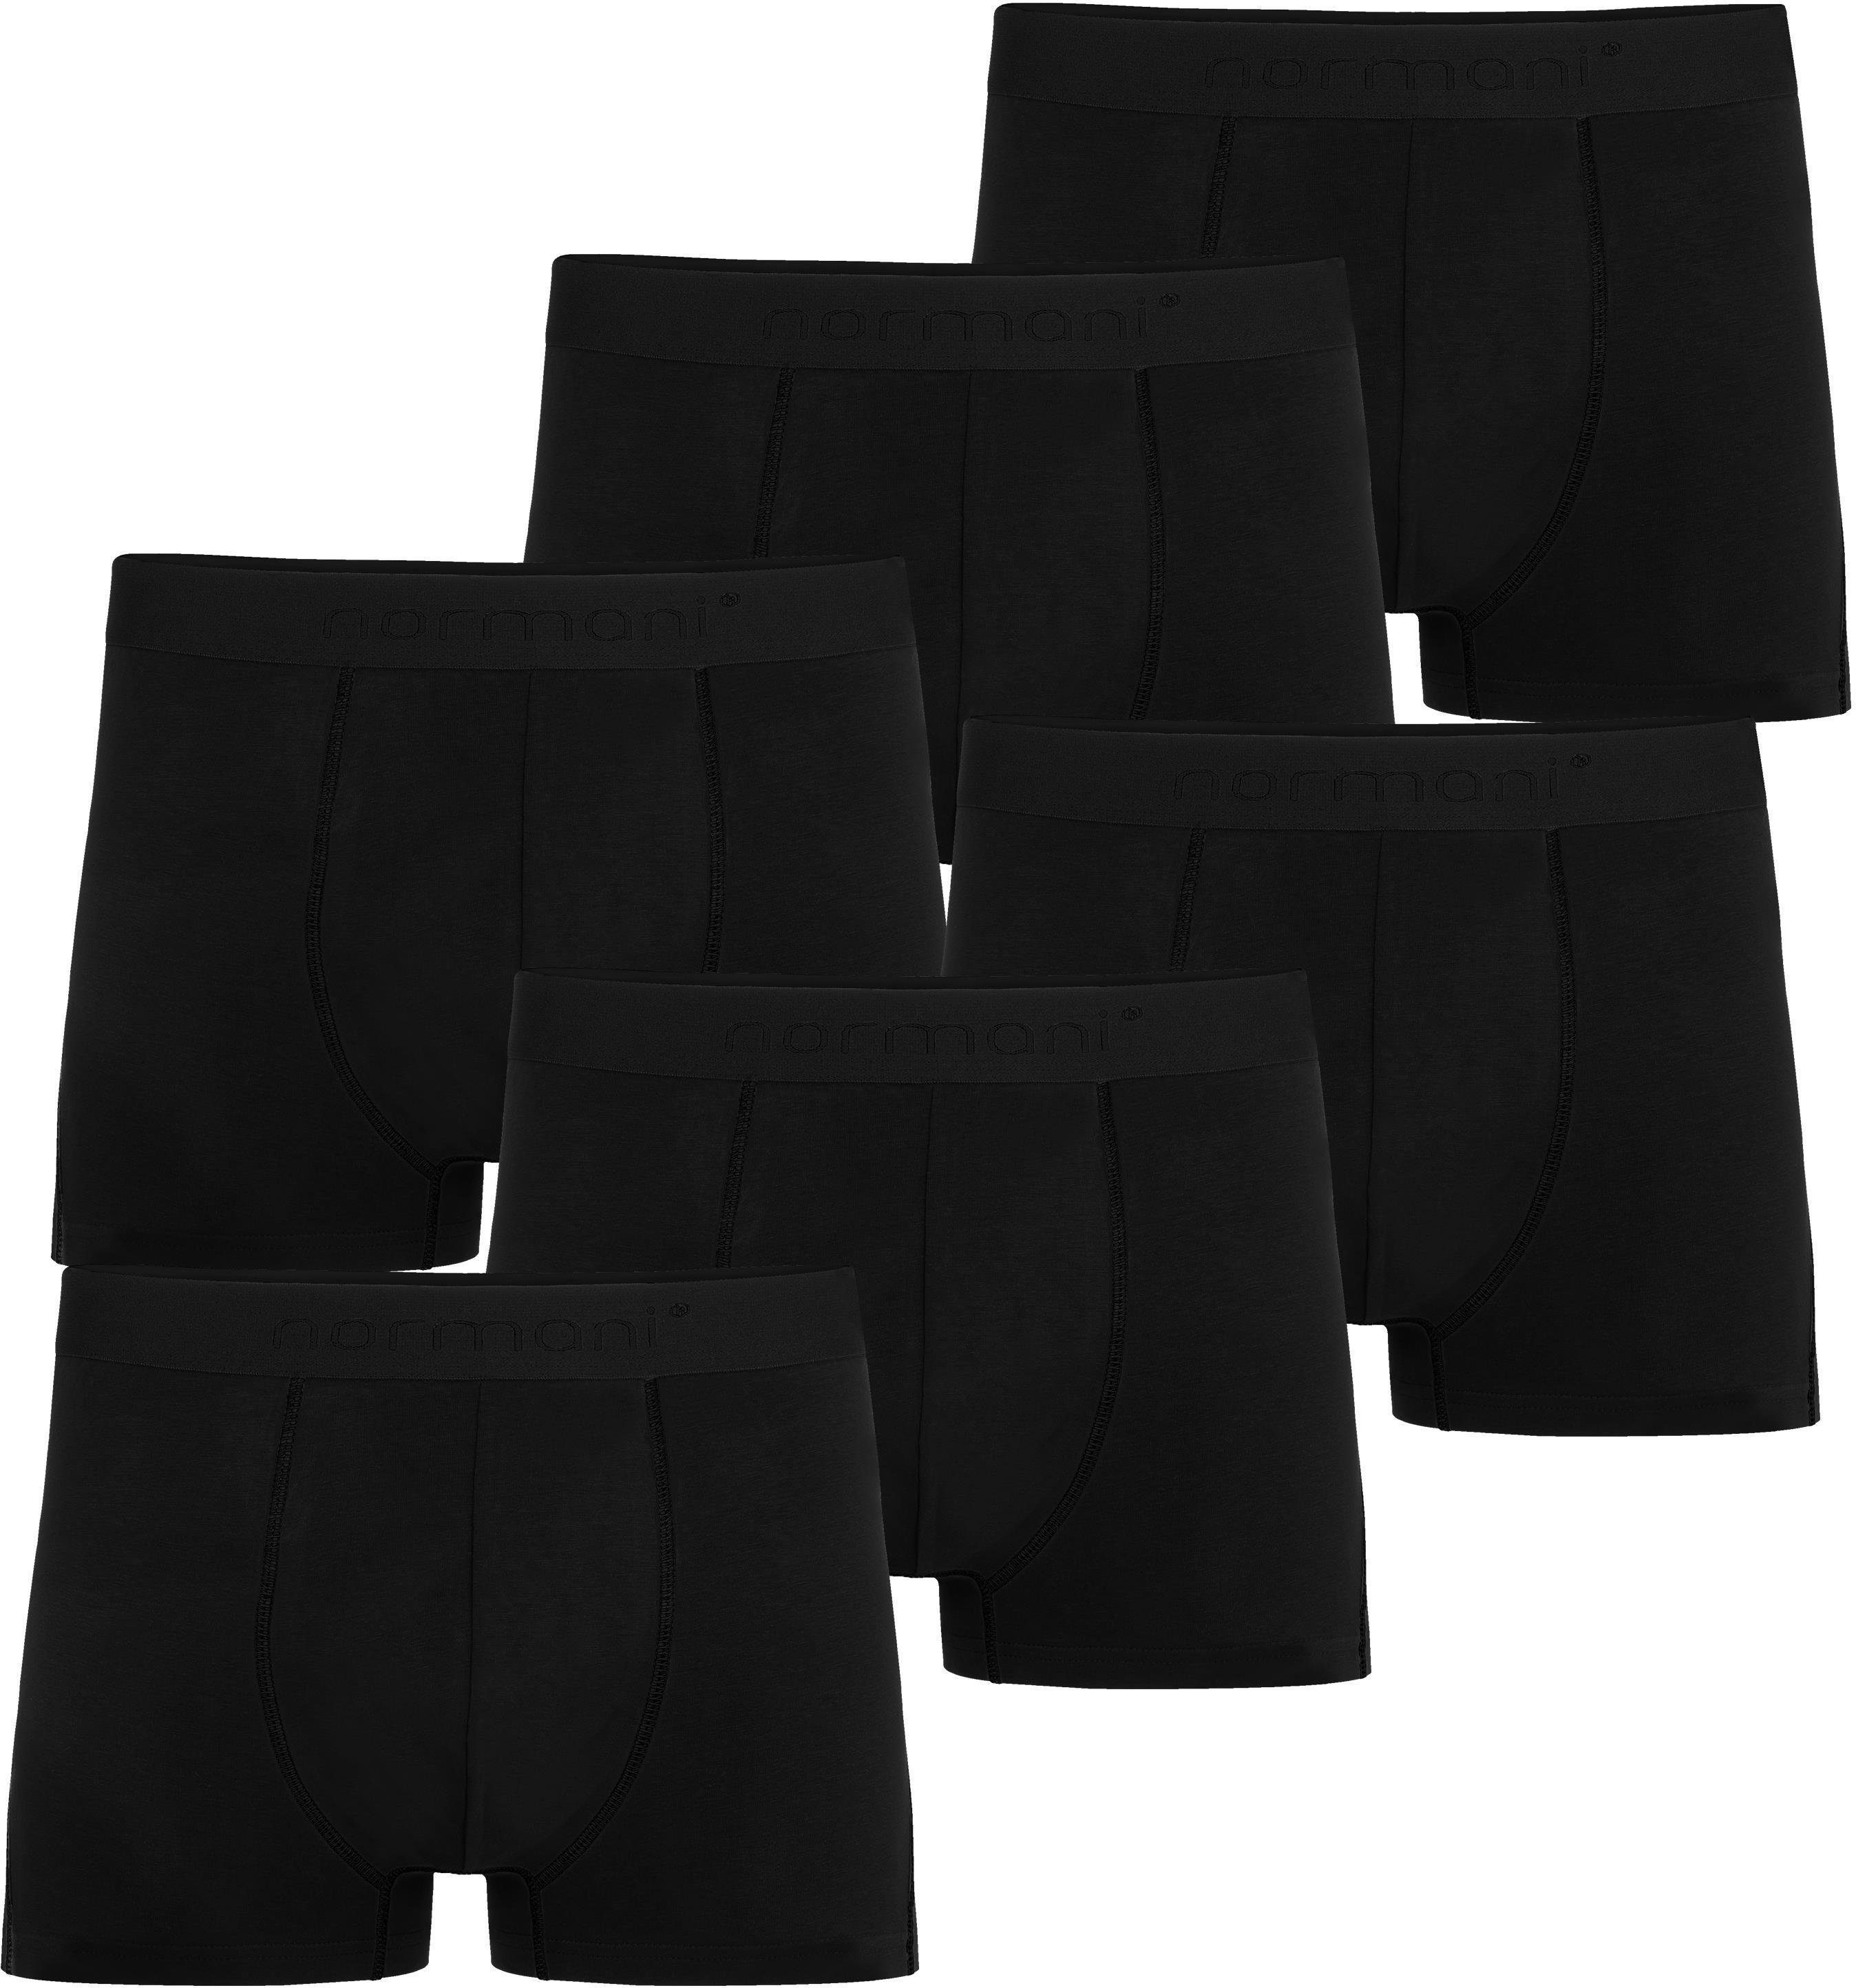 normani Boxershorts 6 Herren Baumwoll-Boxershorts Unterhose aus atmungsaktiver Baumwolle für Männer Schwarz